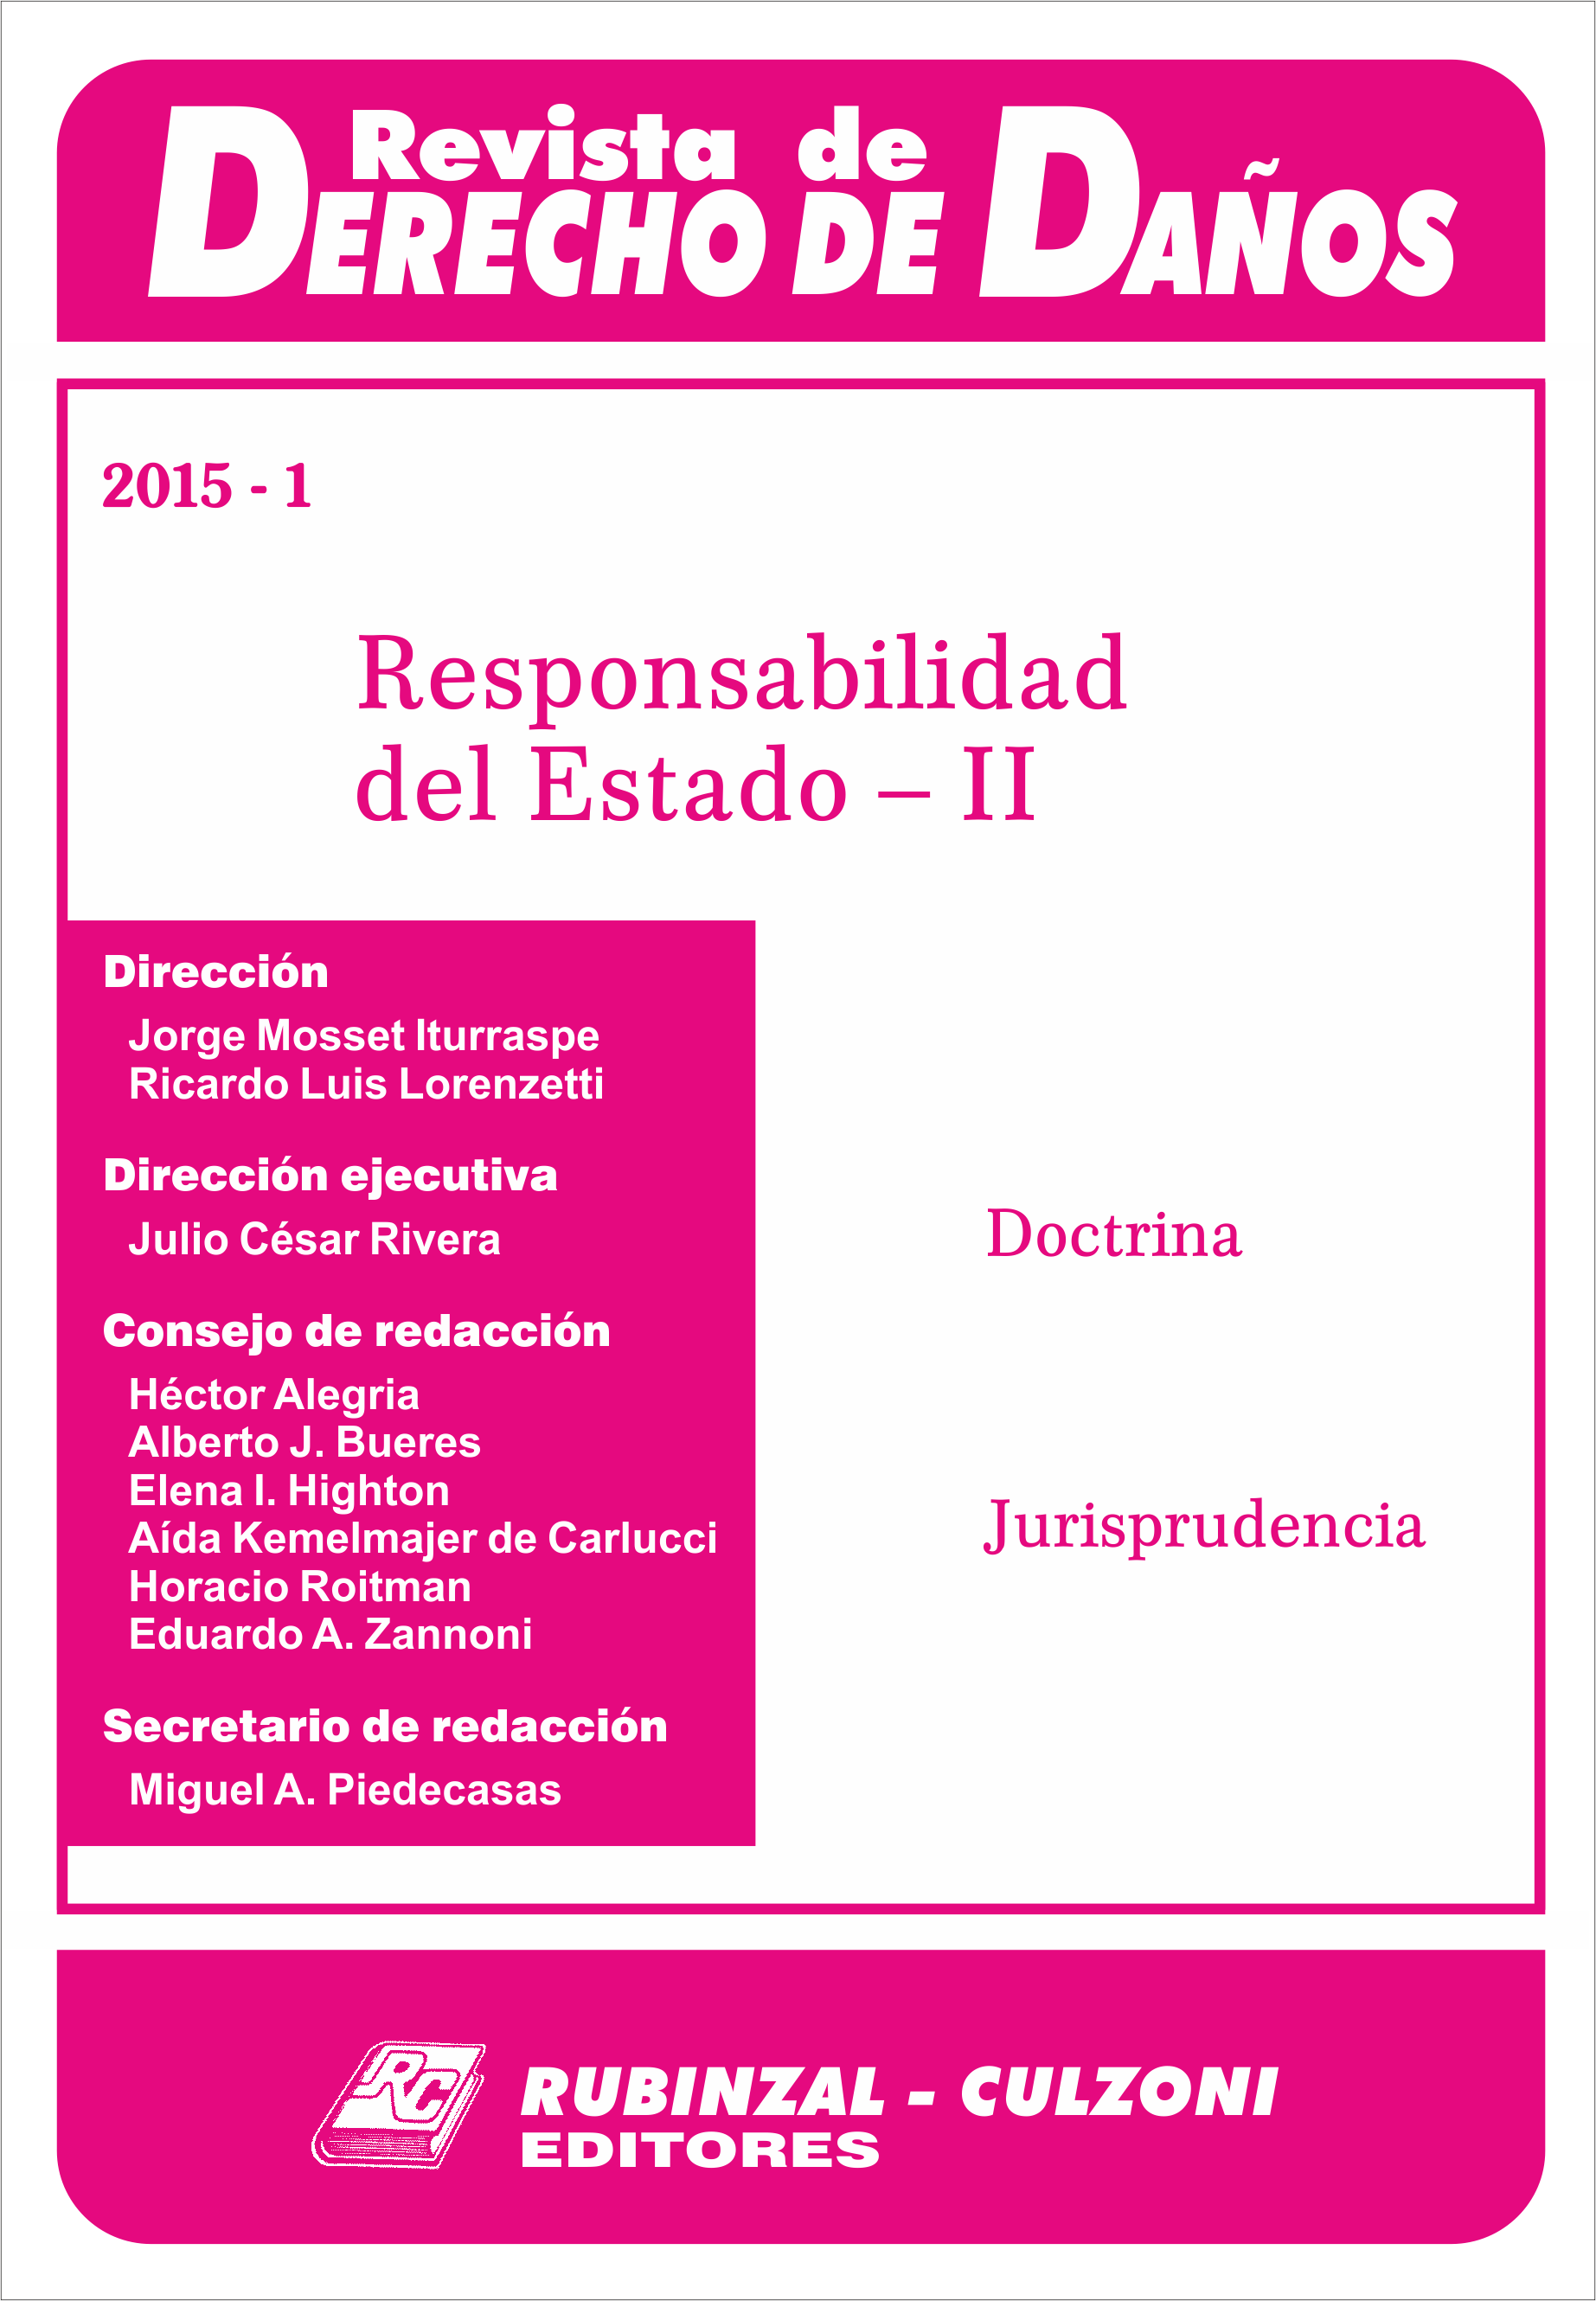 Revista de Derecho de Daños - Responsabilidad del Estado - II.